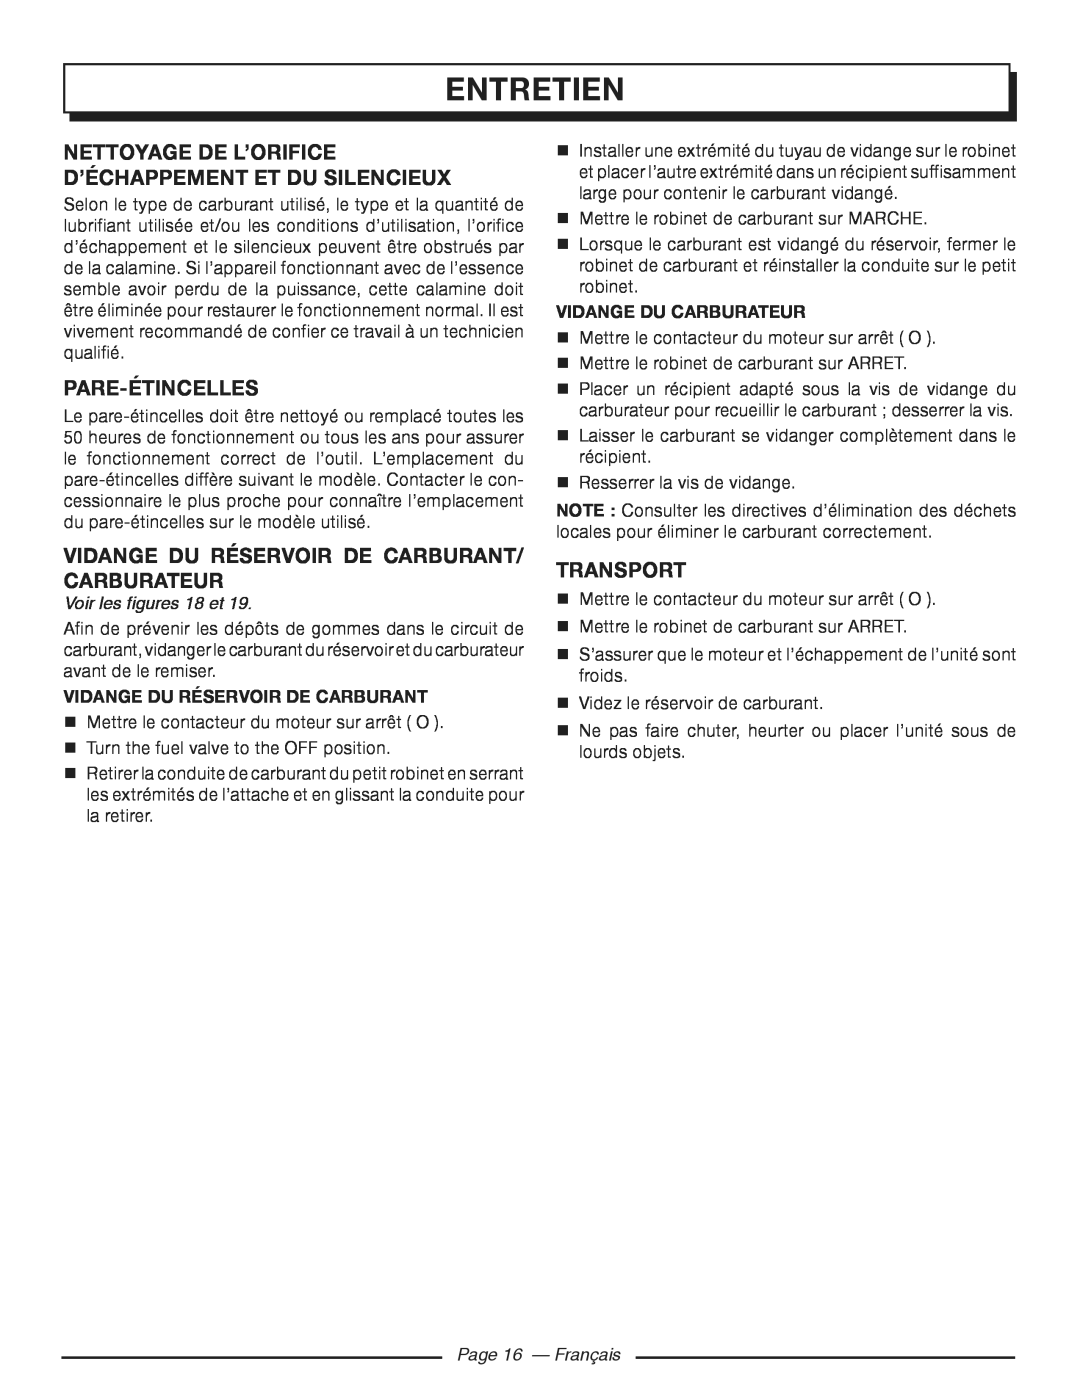 Homelite HGCA3000 Nettoyage De L’Orifice D’Échappement Et Du Silencieux, Pare-Étincelles, Transport, Page 16 - Français 